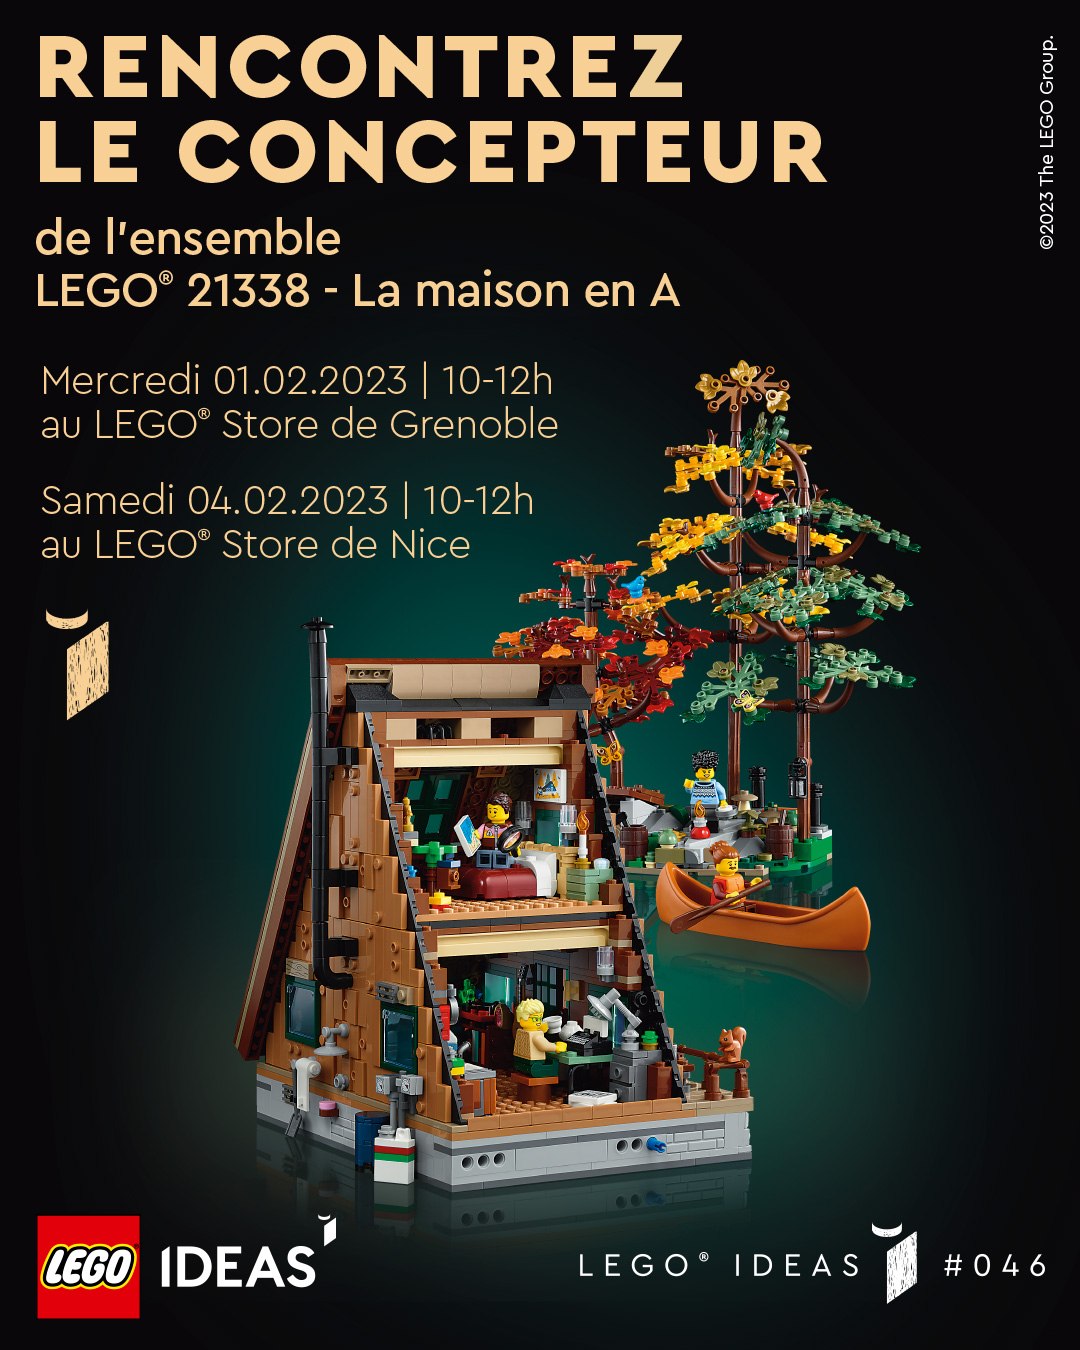 LEGO Ideas 21338 A-frame kabina: upoznajte dizajnera ventilatora u prodavnicama Grenobla i Nice